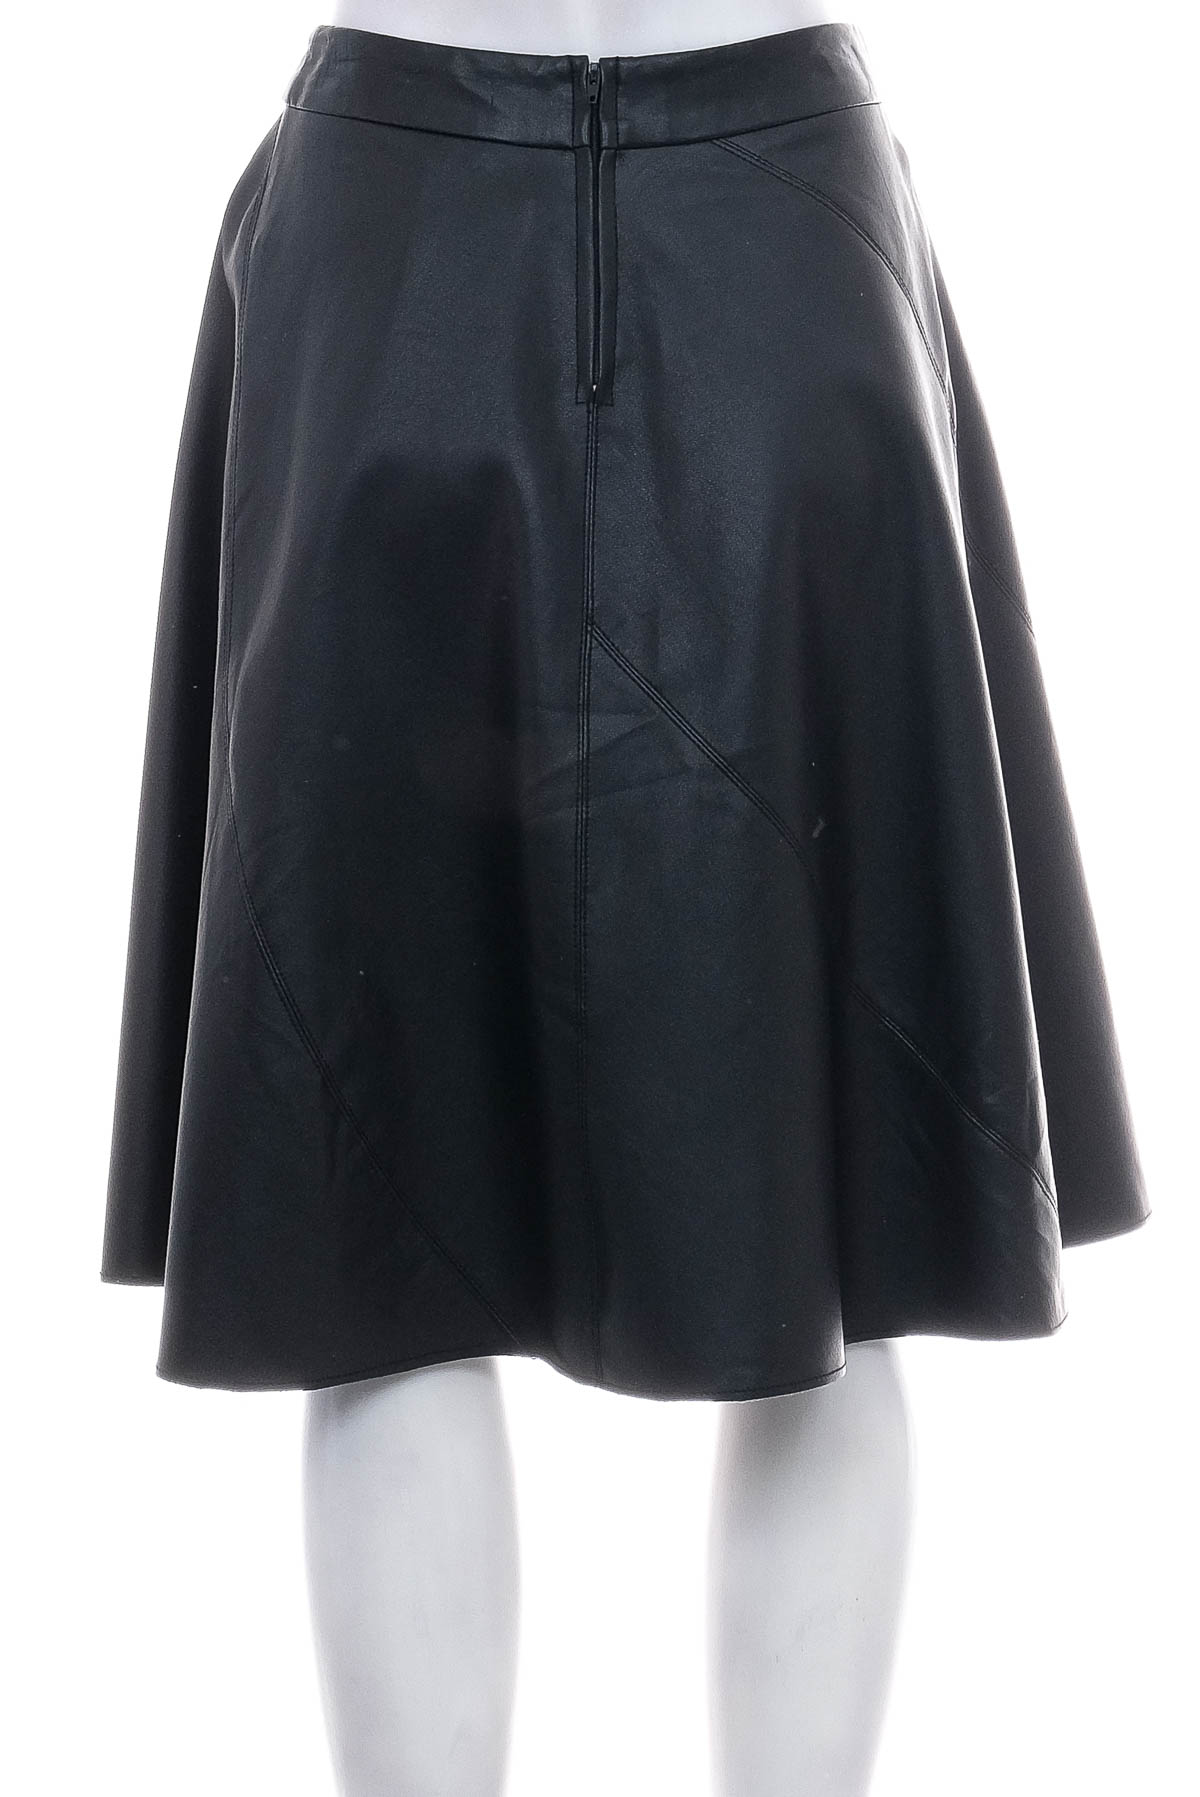 Leather skirt - Amisu - 1